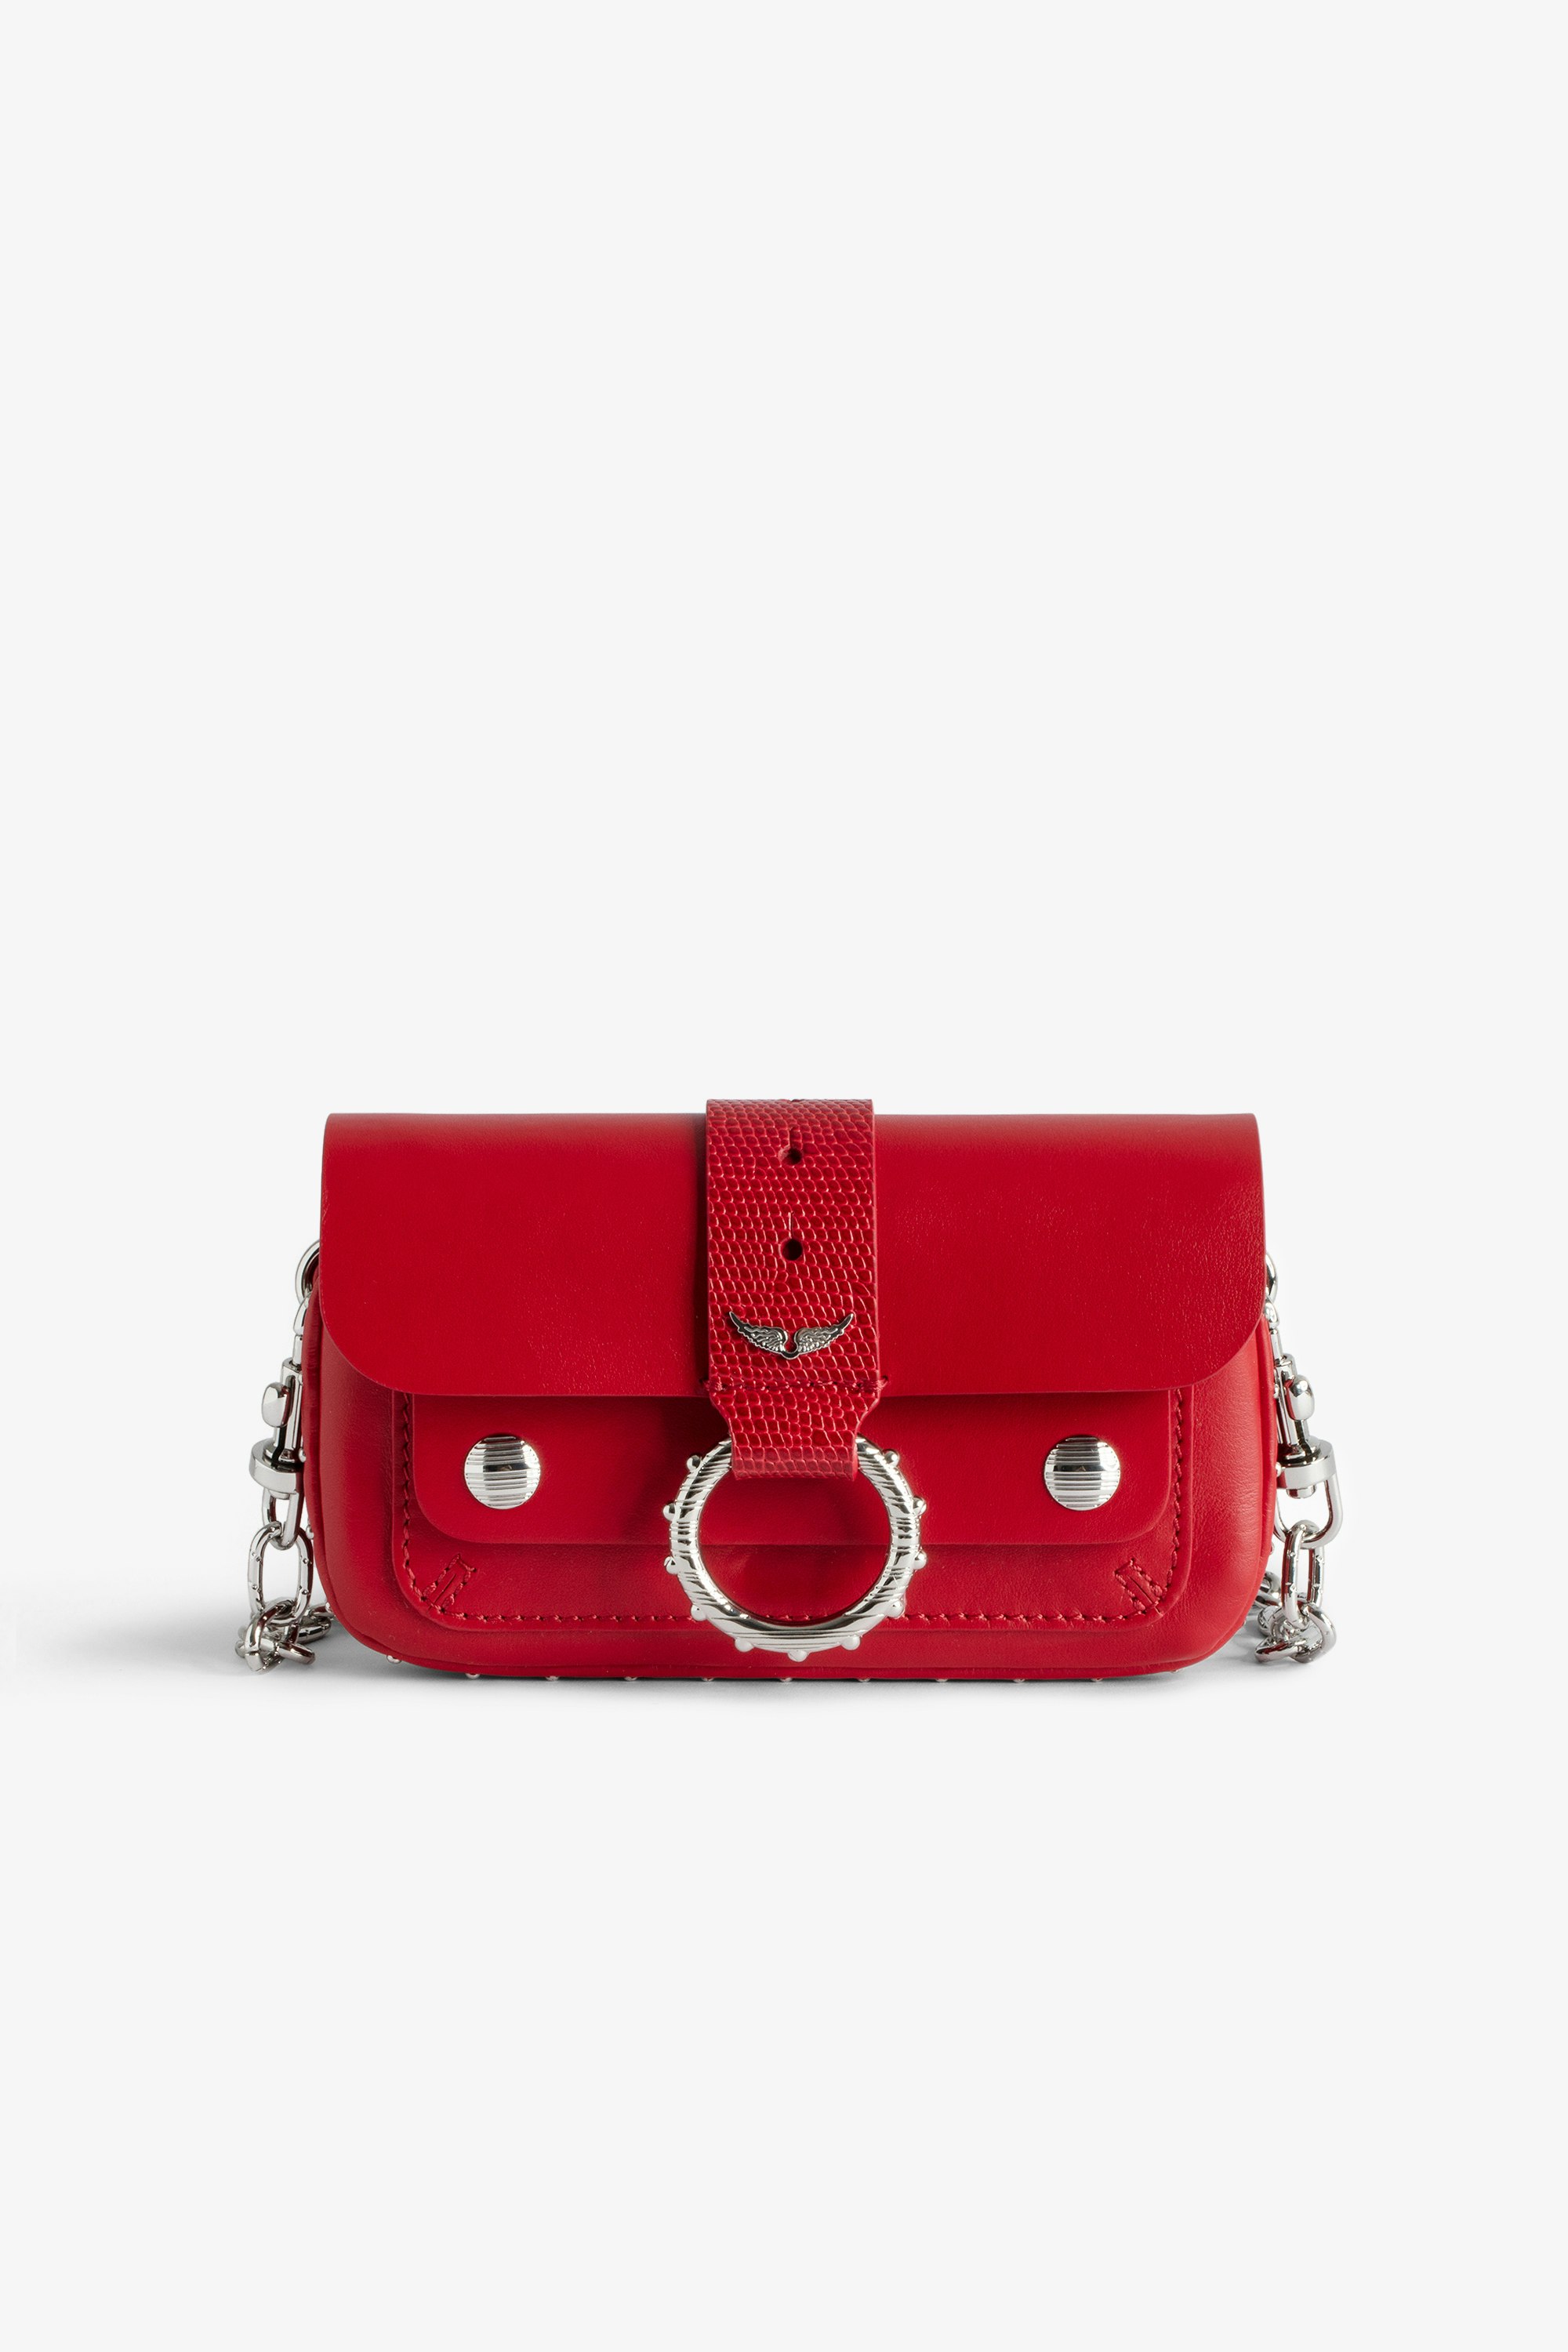 Sac Kate Wallet - Mini sac en cuir lisse rouge à chaîne en métal et passant en cuir embossé effet iguane.